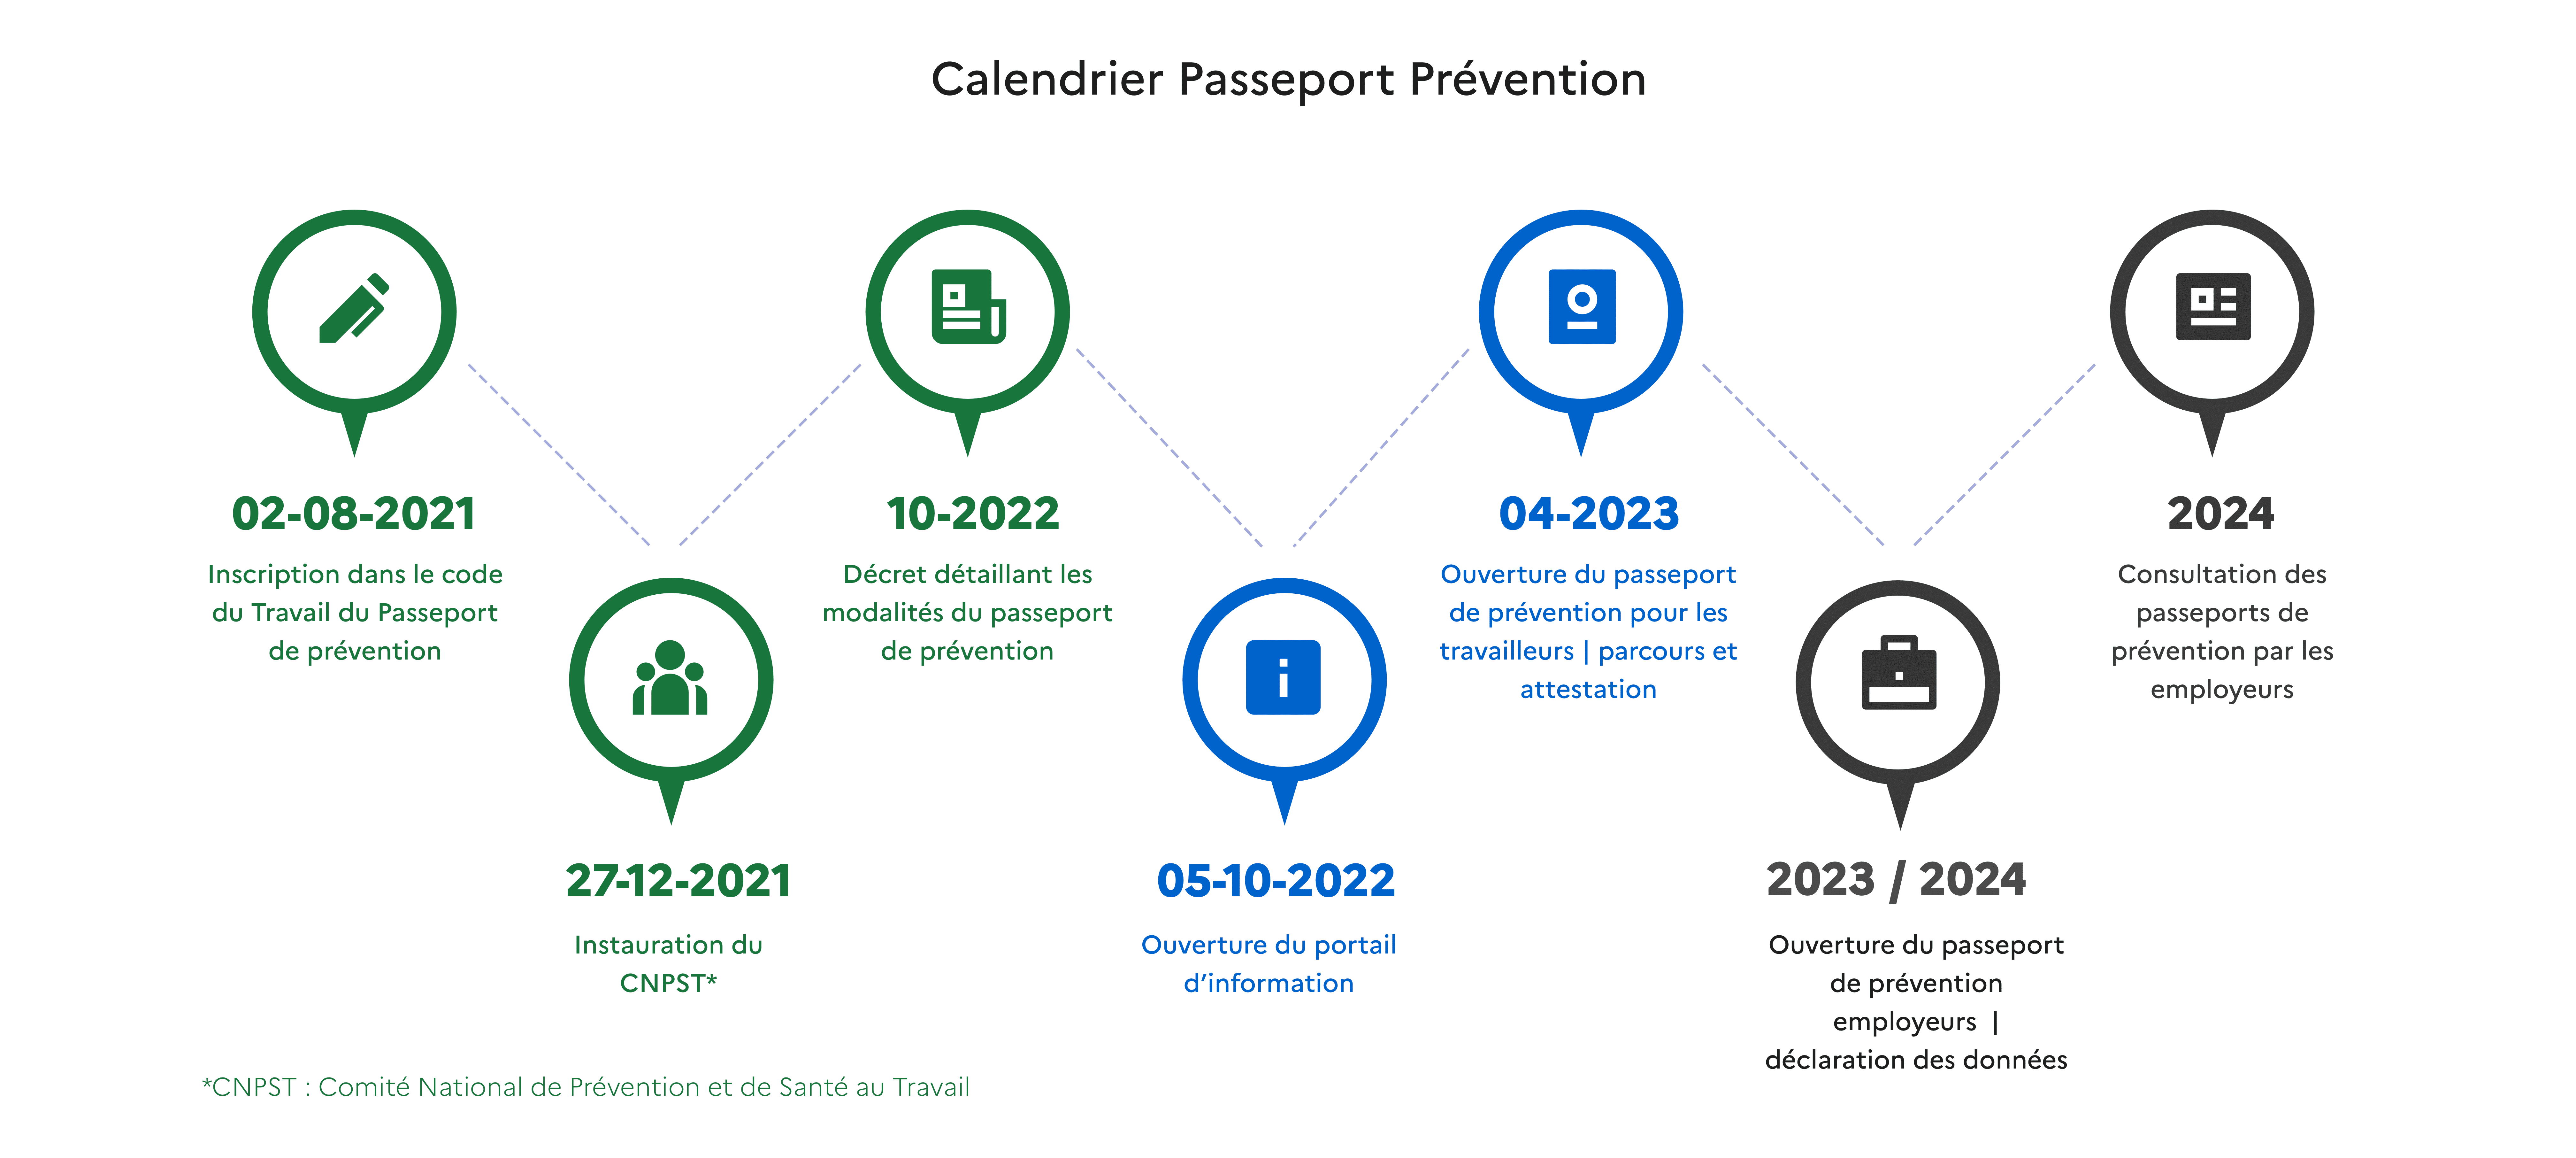 Calendrier du passeport de prévention